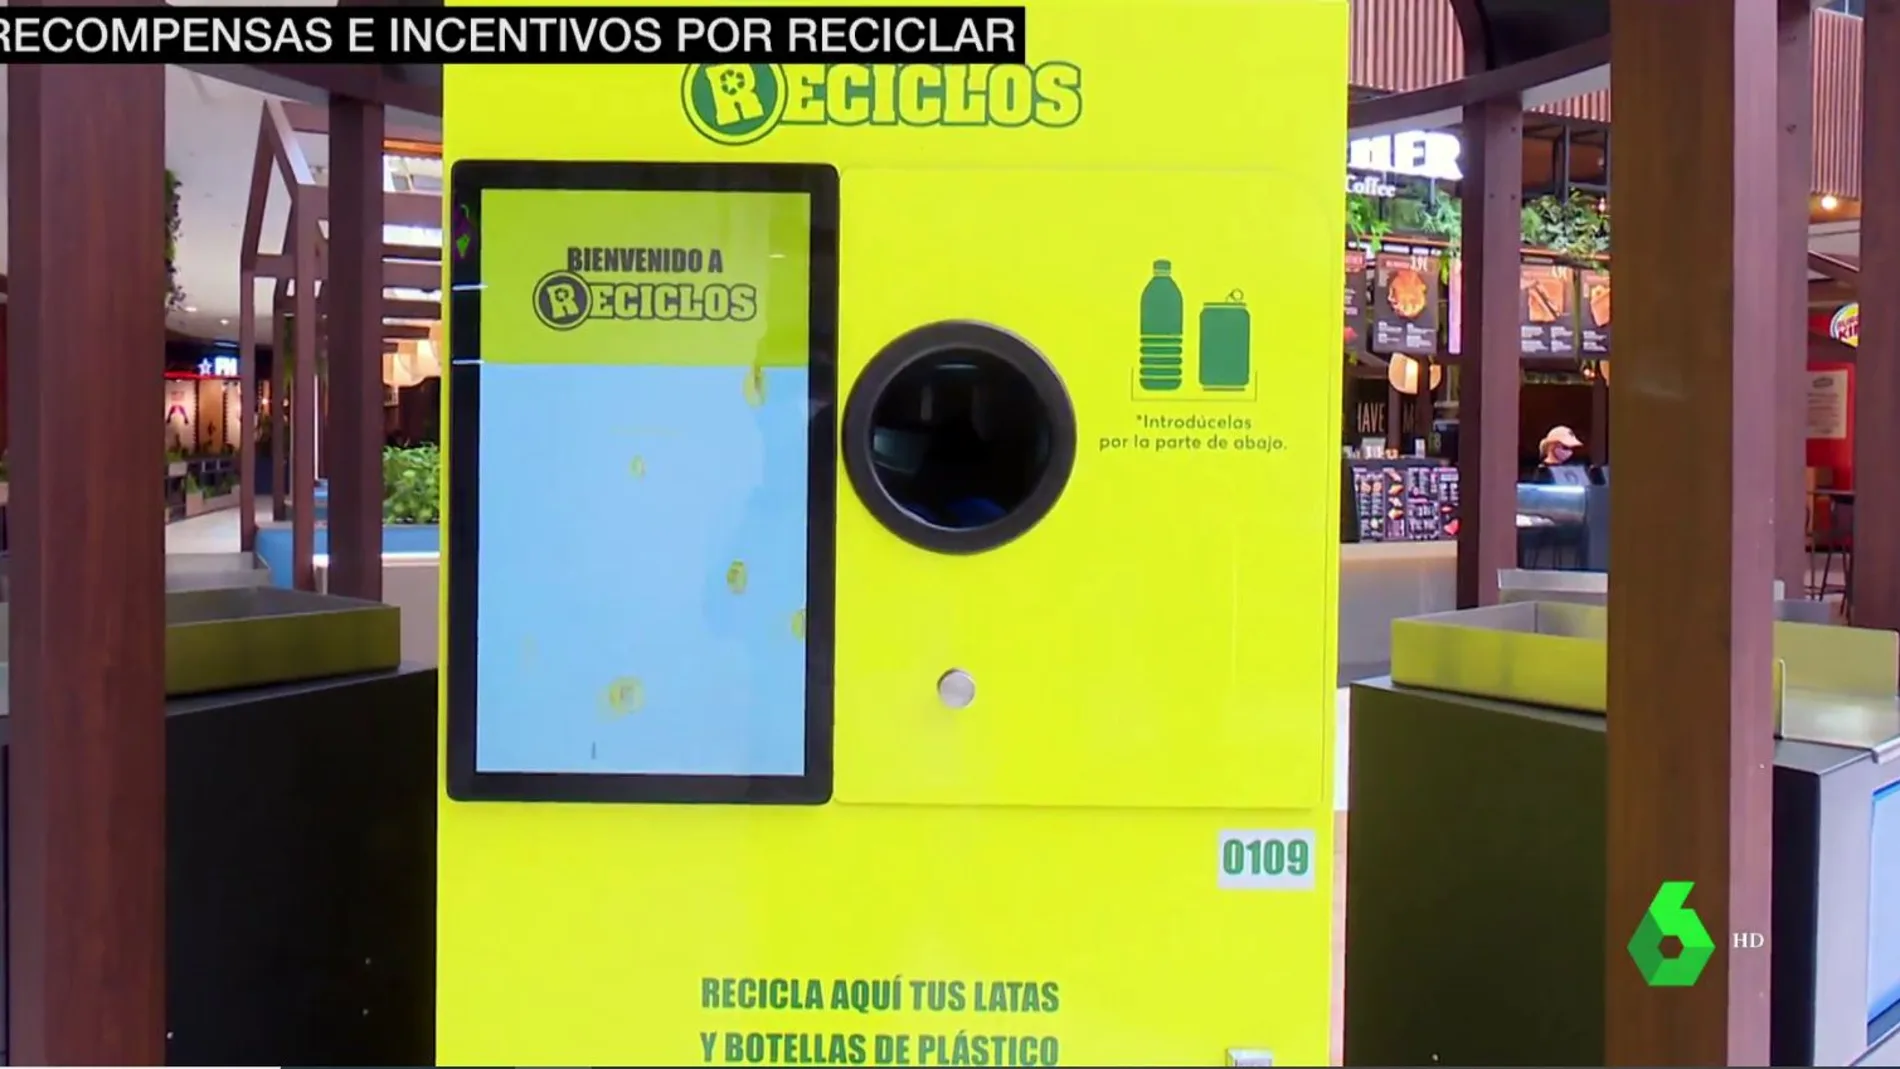  Recibir recompensas e incentivos por reciclar, también en vacaciones: así es el sistema Reciclos